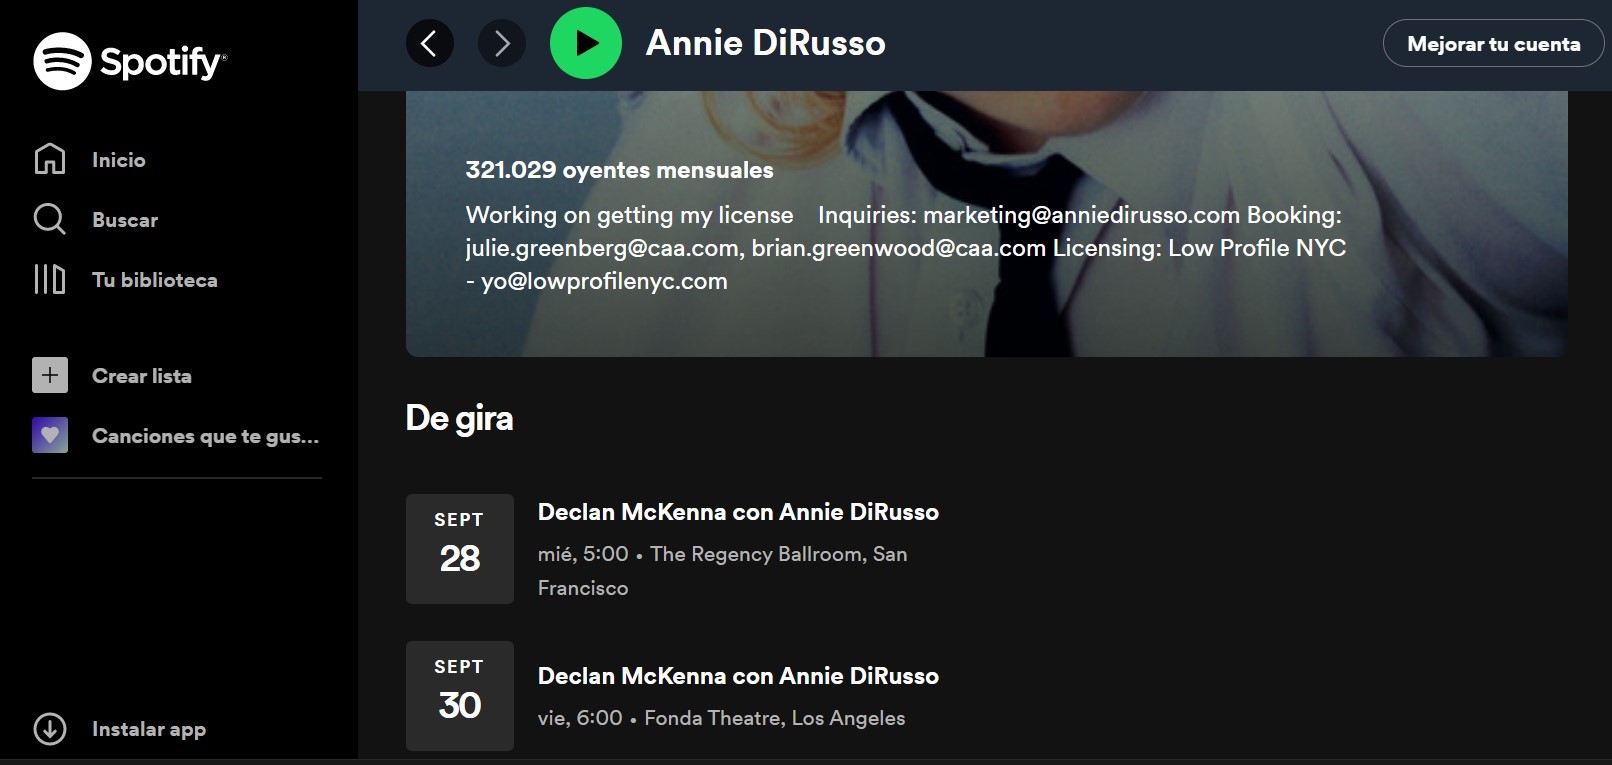 Annie DiRusso, una de las artistas que ofrece la posibilidad de comprar entradas a través de Spotify.